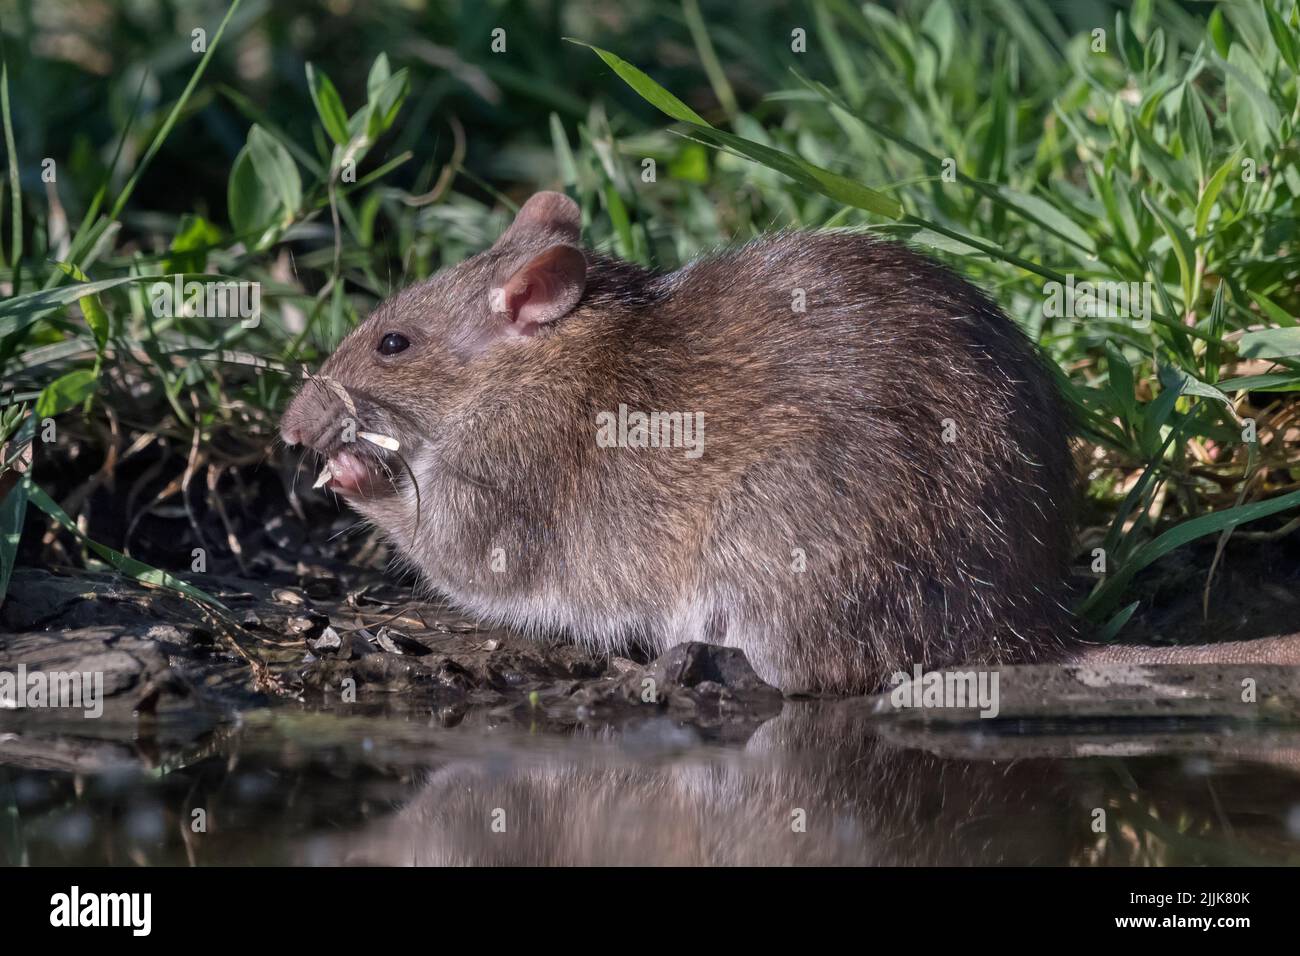 Brown Rat or Norway Rat (Rattus norvegicus). Romania Stock Photo